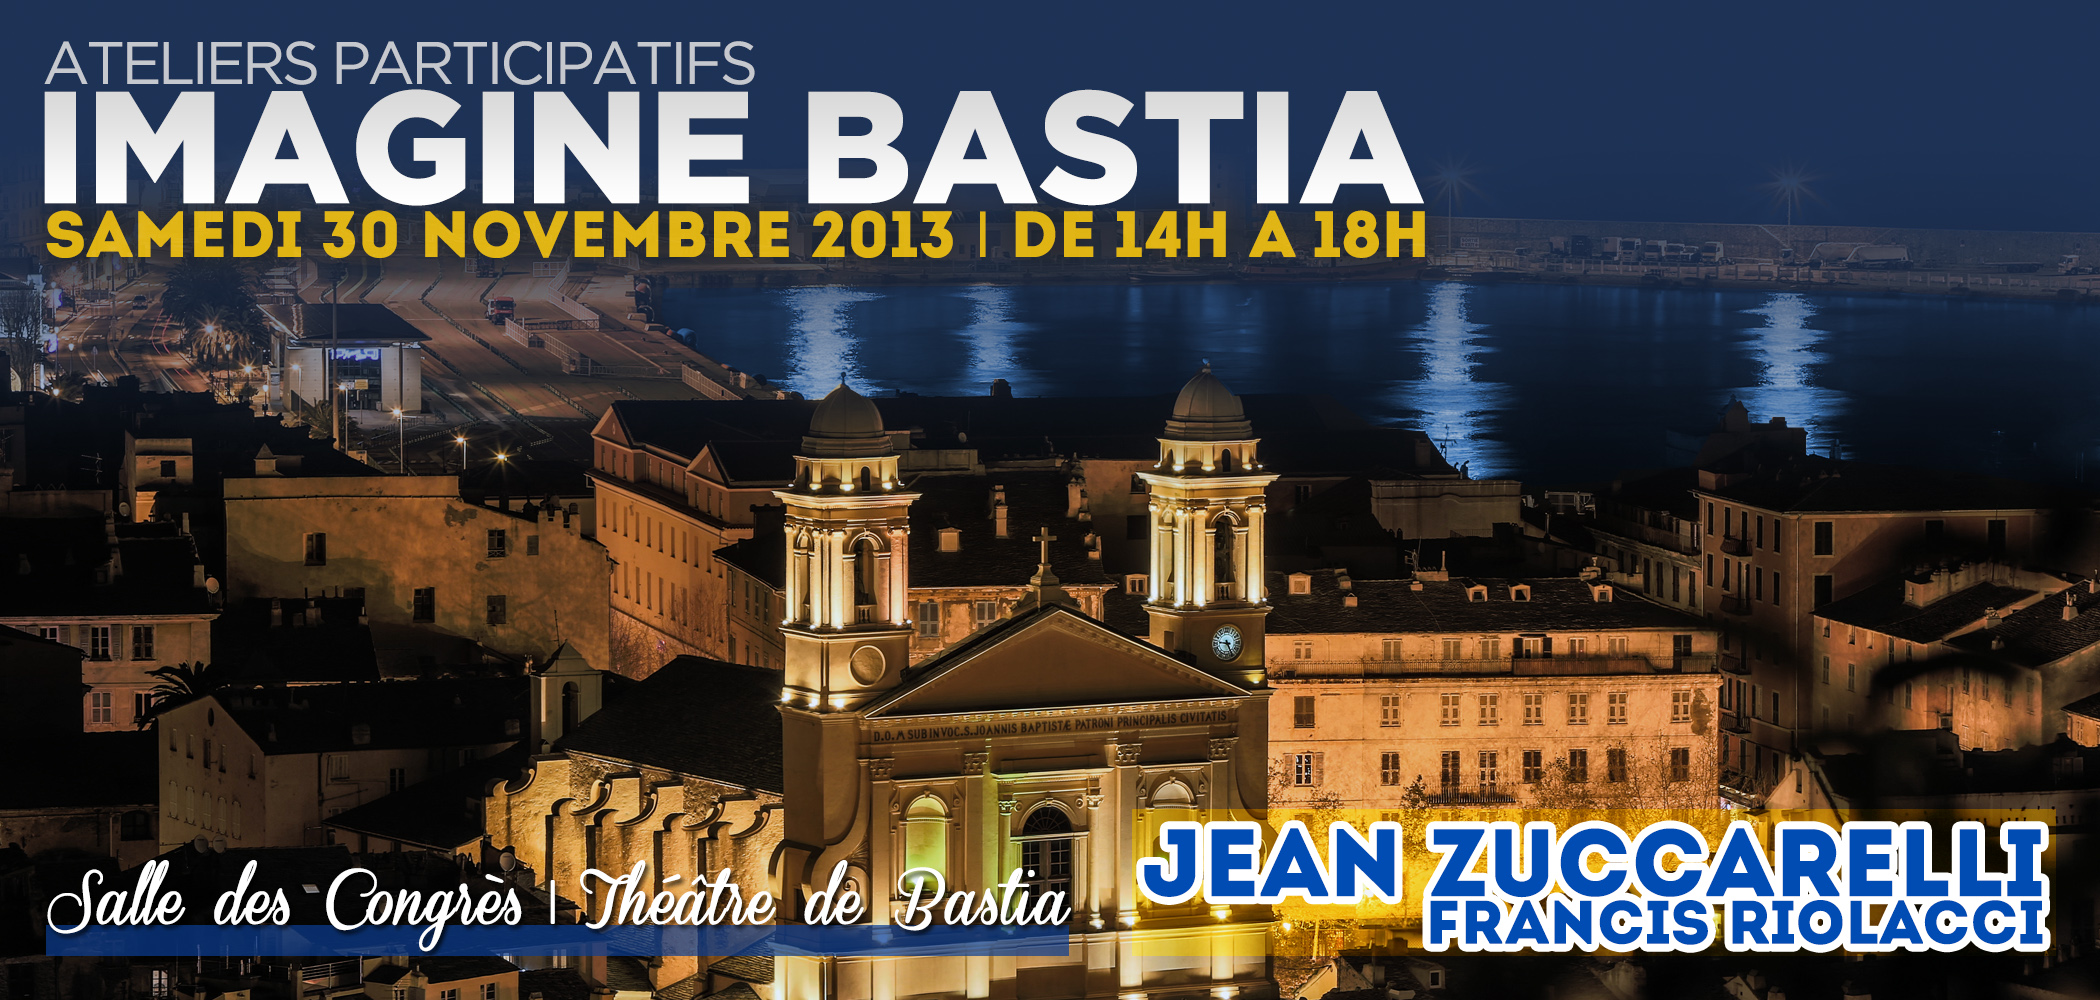 Rendez-vous avec les ateliers participatifs "Imagine Bastia" samedi 30 novembre de 14h à 18h, salle des congrès du Théâtre municipal